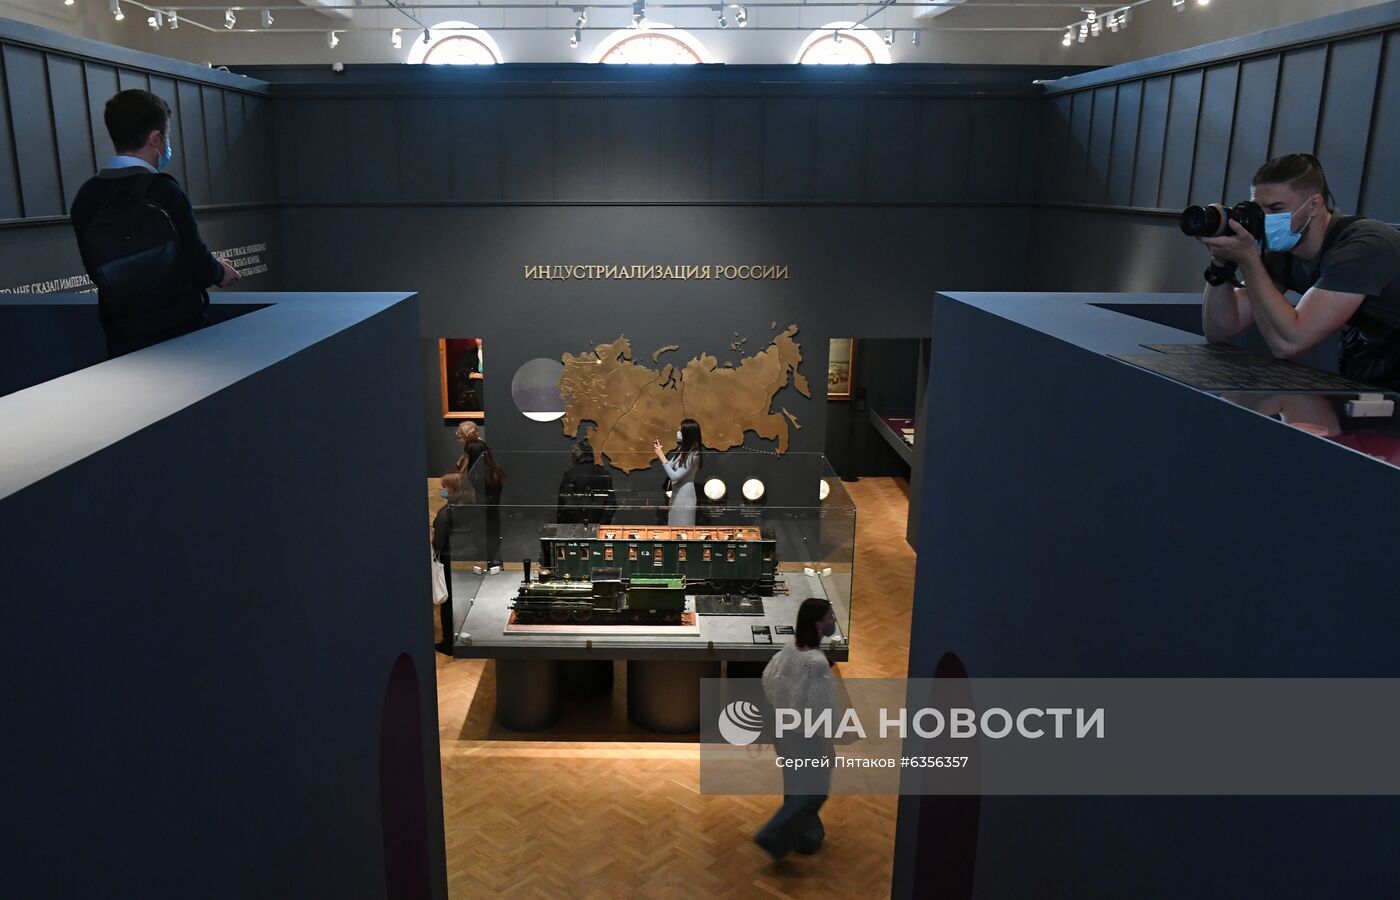 Выставка "Александр III. Миротворец" в Государственном историческом музее